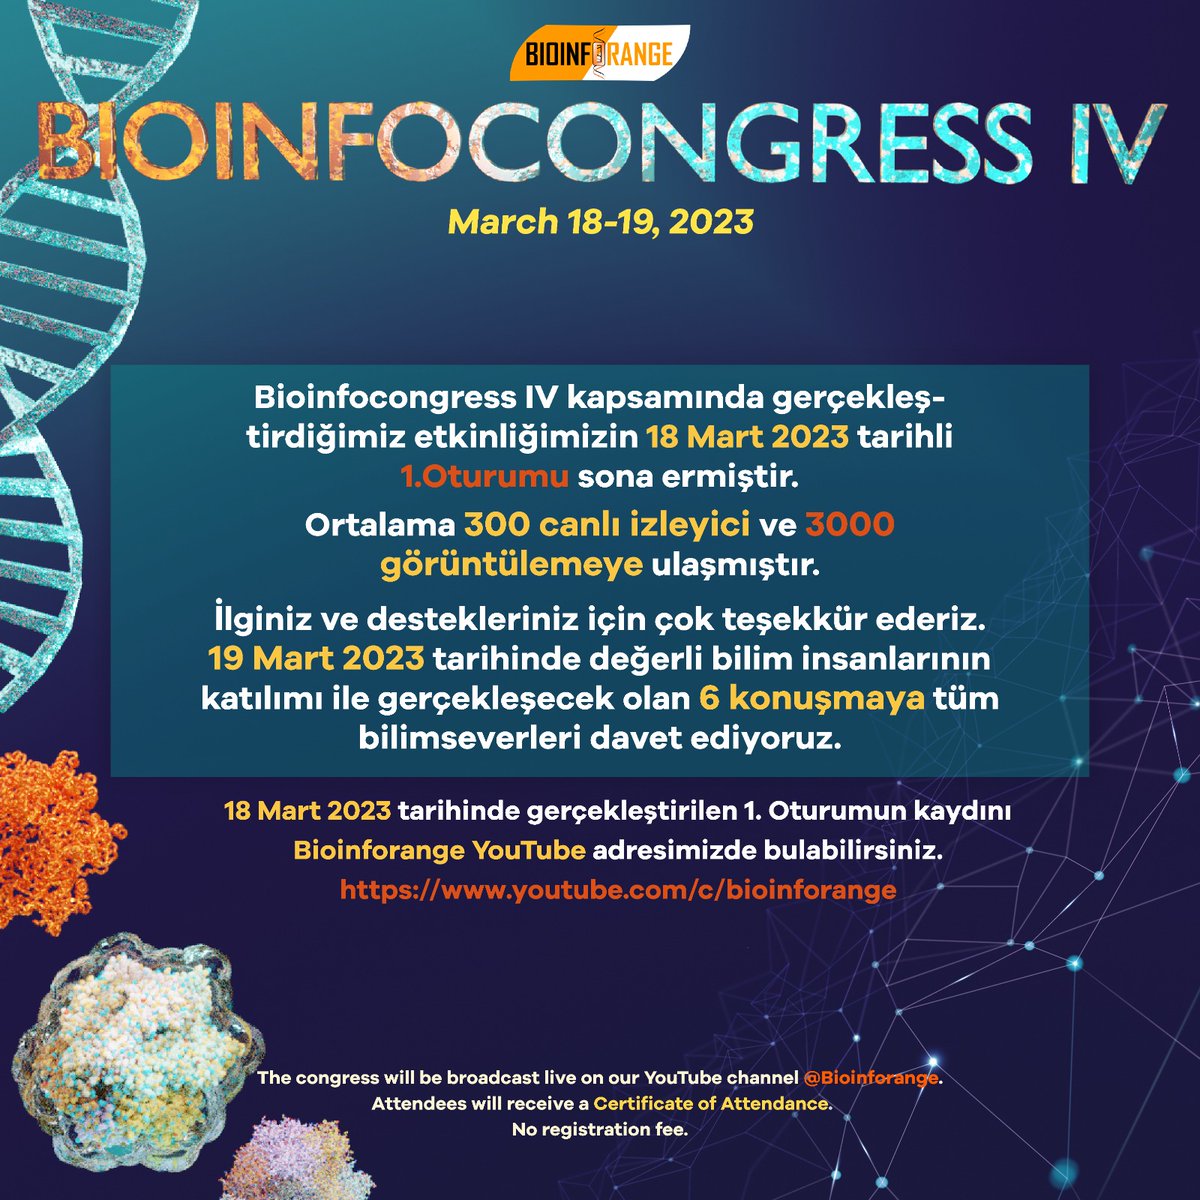 #Bioinfocongress IV kapsamında gerçekleştireceğimiz etkinliğimizin 18 Mart 2023 tarihli 1. Oturumu sona ermiştir. Ortalama 300 canlı izleyici ve 3000 görüntülemeye ulaşmıştır. İlginiz ve destekleriniz için çok teşekkür ederiz.

#bilimlekalalım